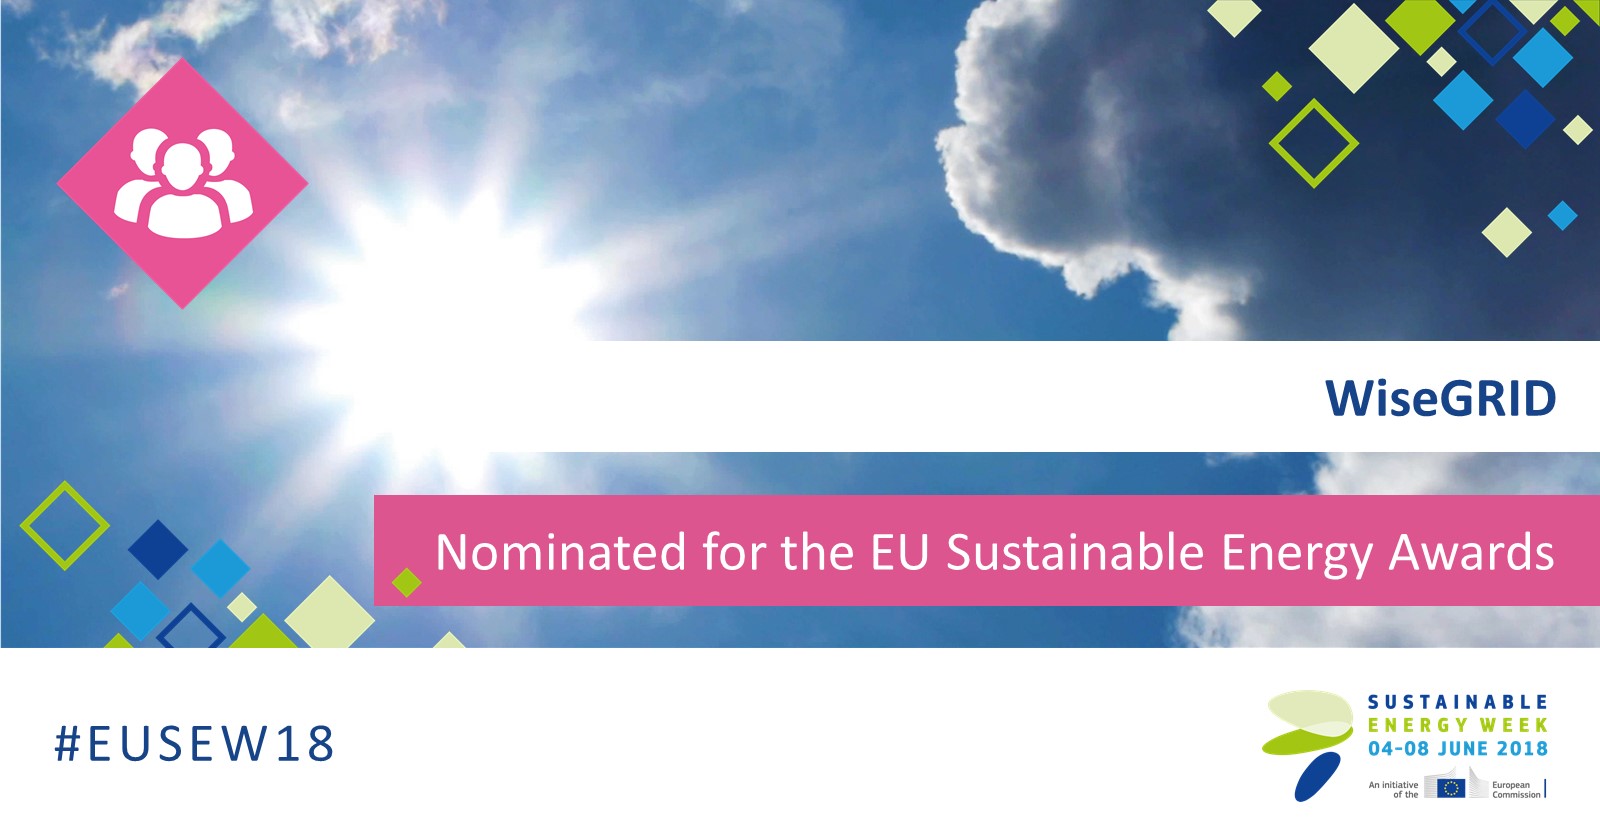 El proyecto WiseGRID, candidato a los Premios de Energía Sostenible de la UE